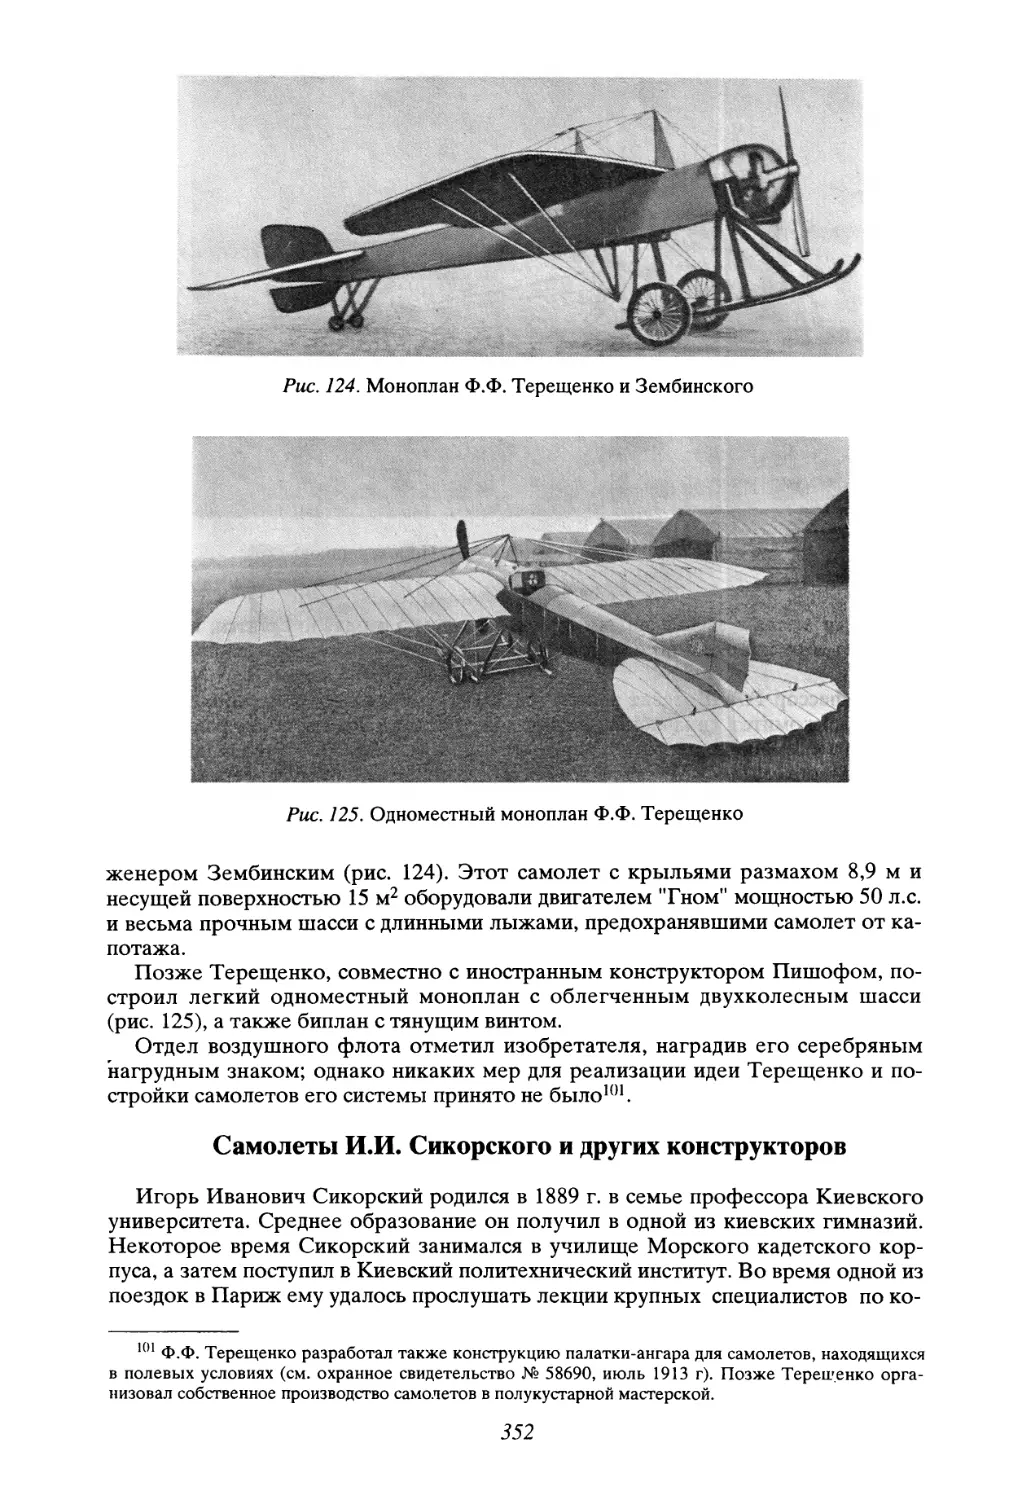 Самолеты И.И. Сикорского и других конструкторов